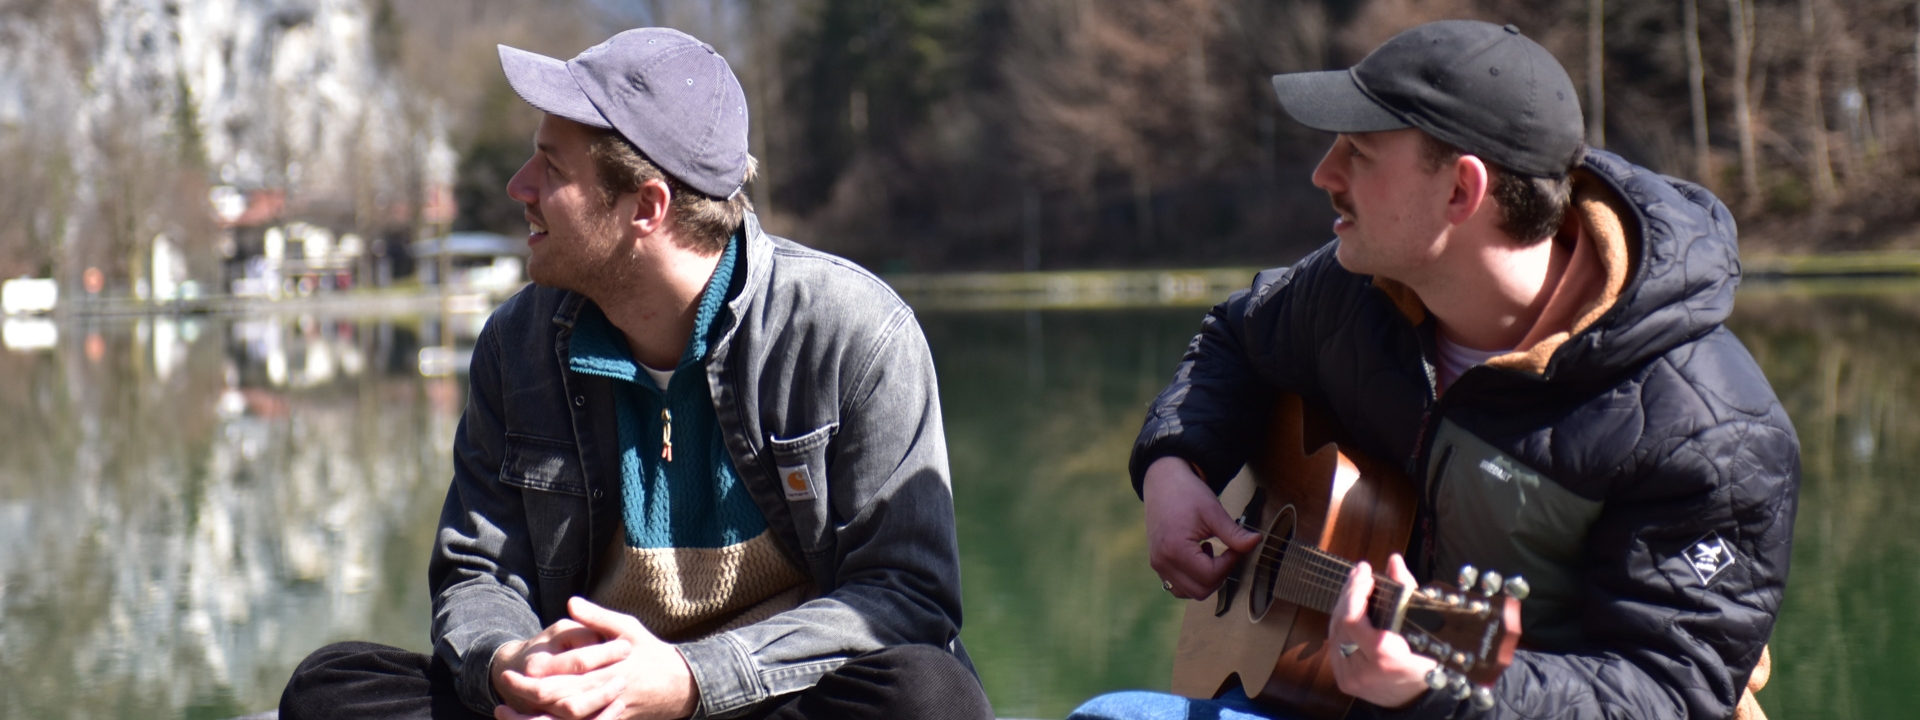 Foto: Zwei junge Männer (Gotti und Eisna), beide mit Basecap, sitzen im Schneidersitz auf einem Steg an einem See. Eisna spielt dabei Gitarre.